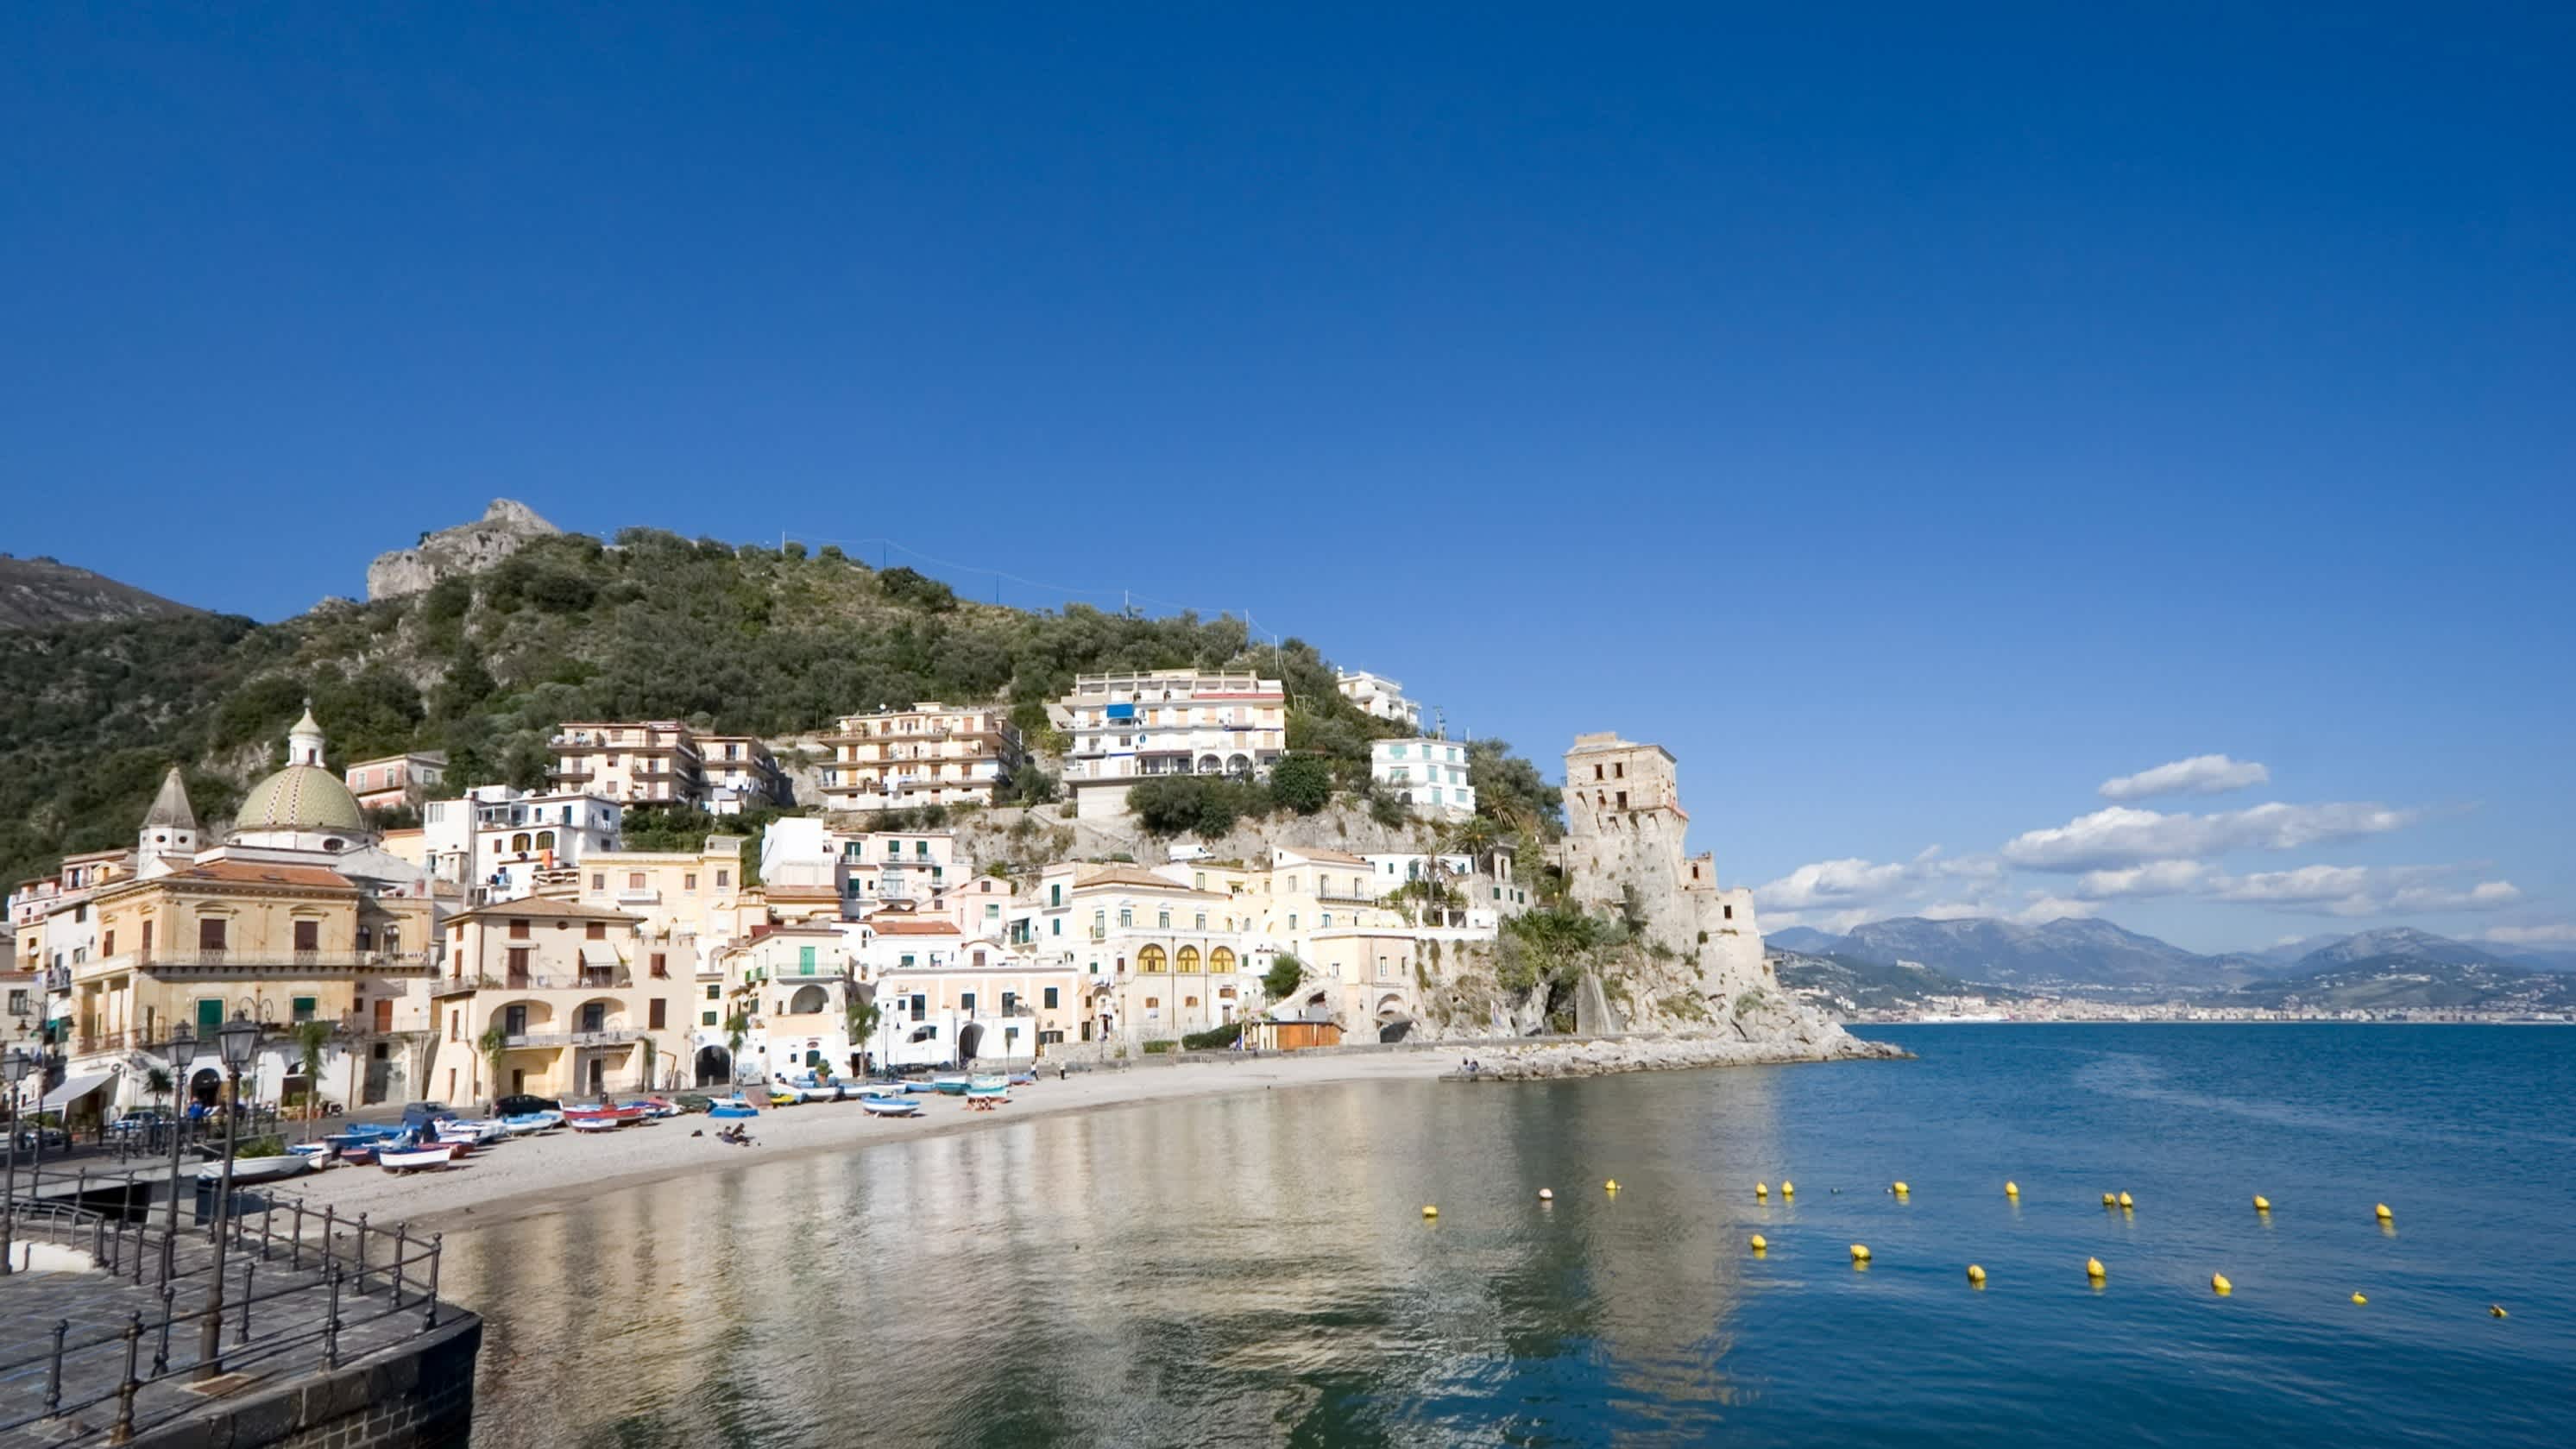 Blick auf die Badebucht des Spiaggia di Cetara mit Hügel im Hintergrund und Häuserfronten